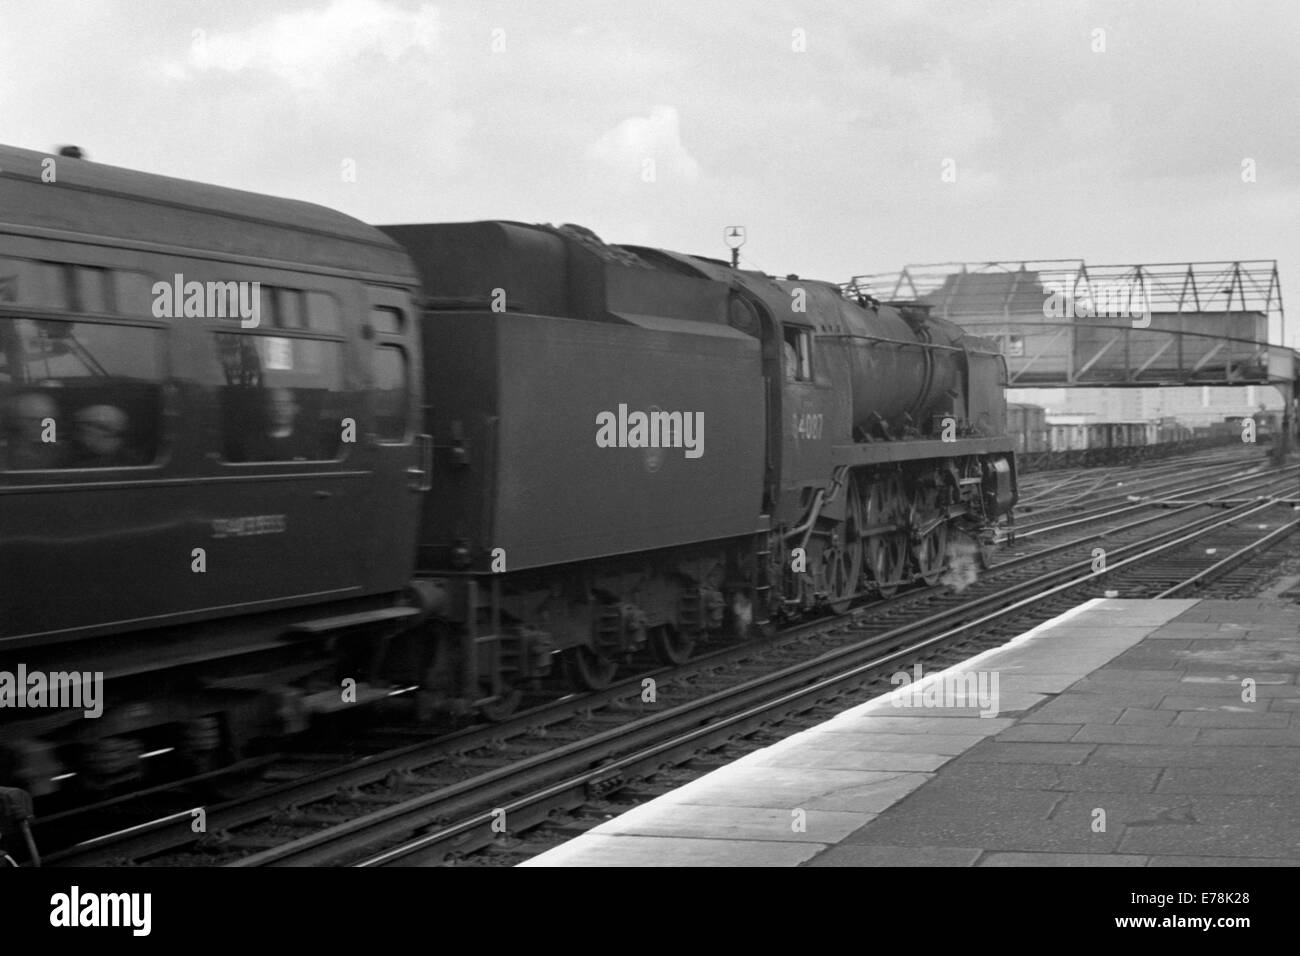 Originale il treno a vapore battaglia della Gran Bretagna classe 34087 145 Squadrone operante su ferrovie britanniche durante gli anni sessanta Foto Stock